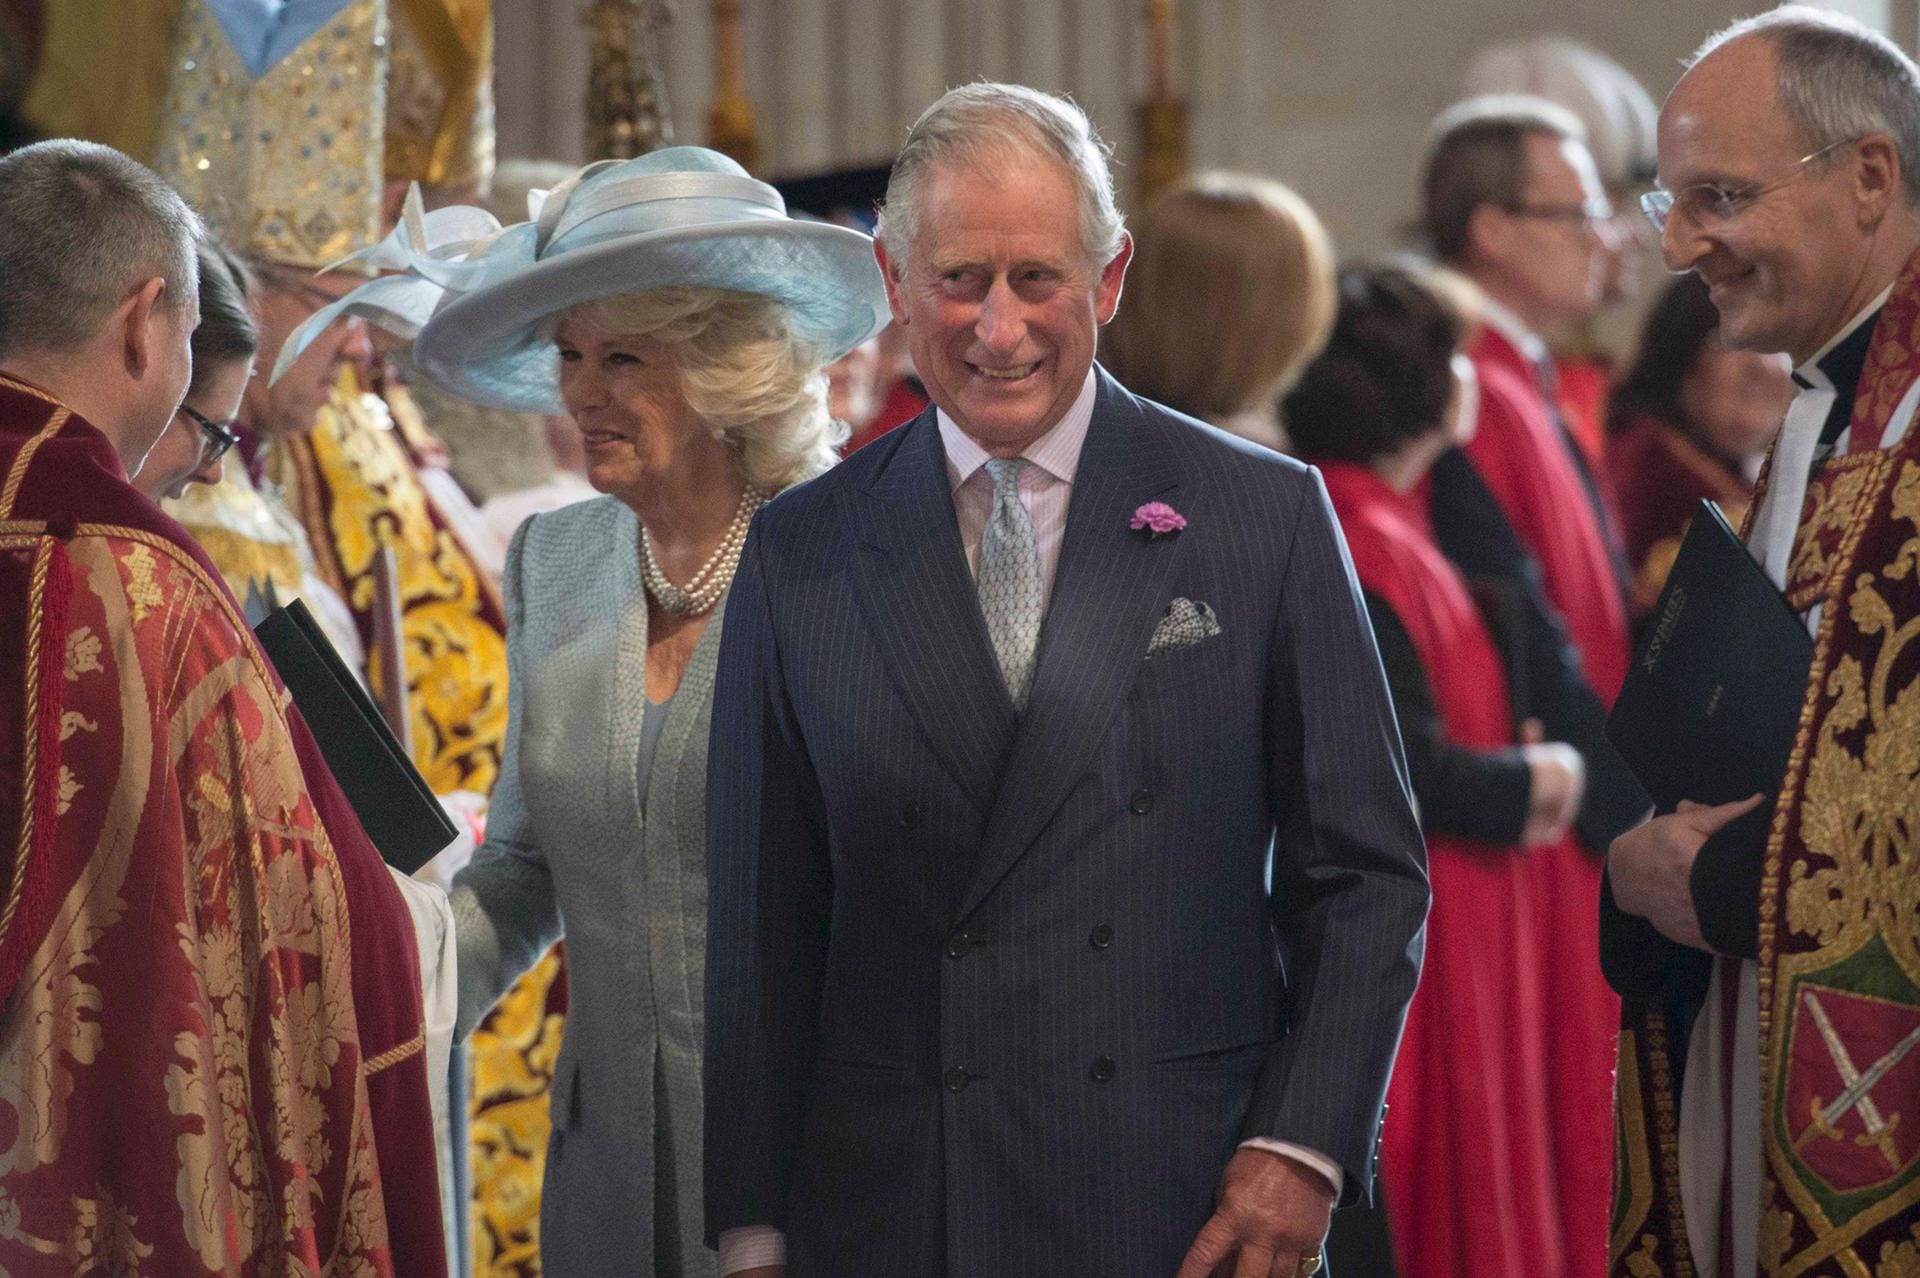 Der Thronfolger Prinz Charles und seine Frau Camilla bei der Ankunft in der Kirche.